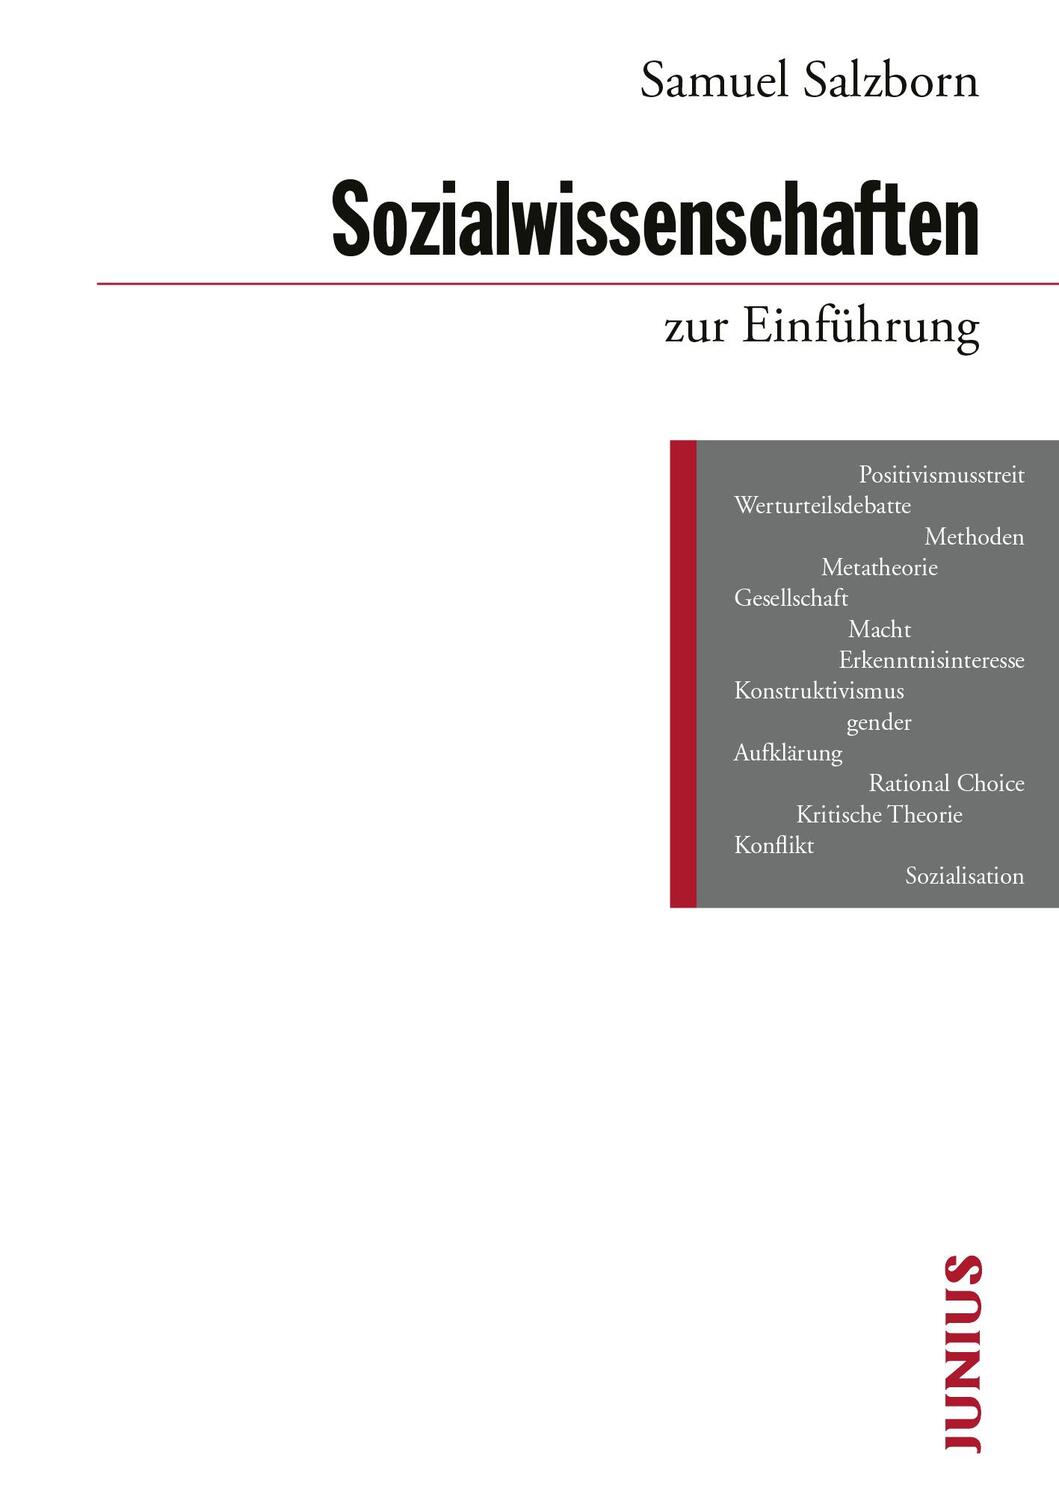 Sozialwissenschaften zur Einführung - Salzborn, Samuel